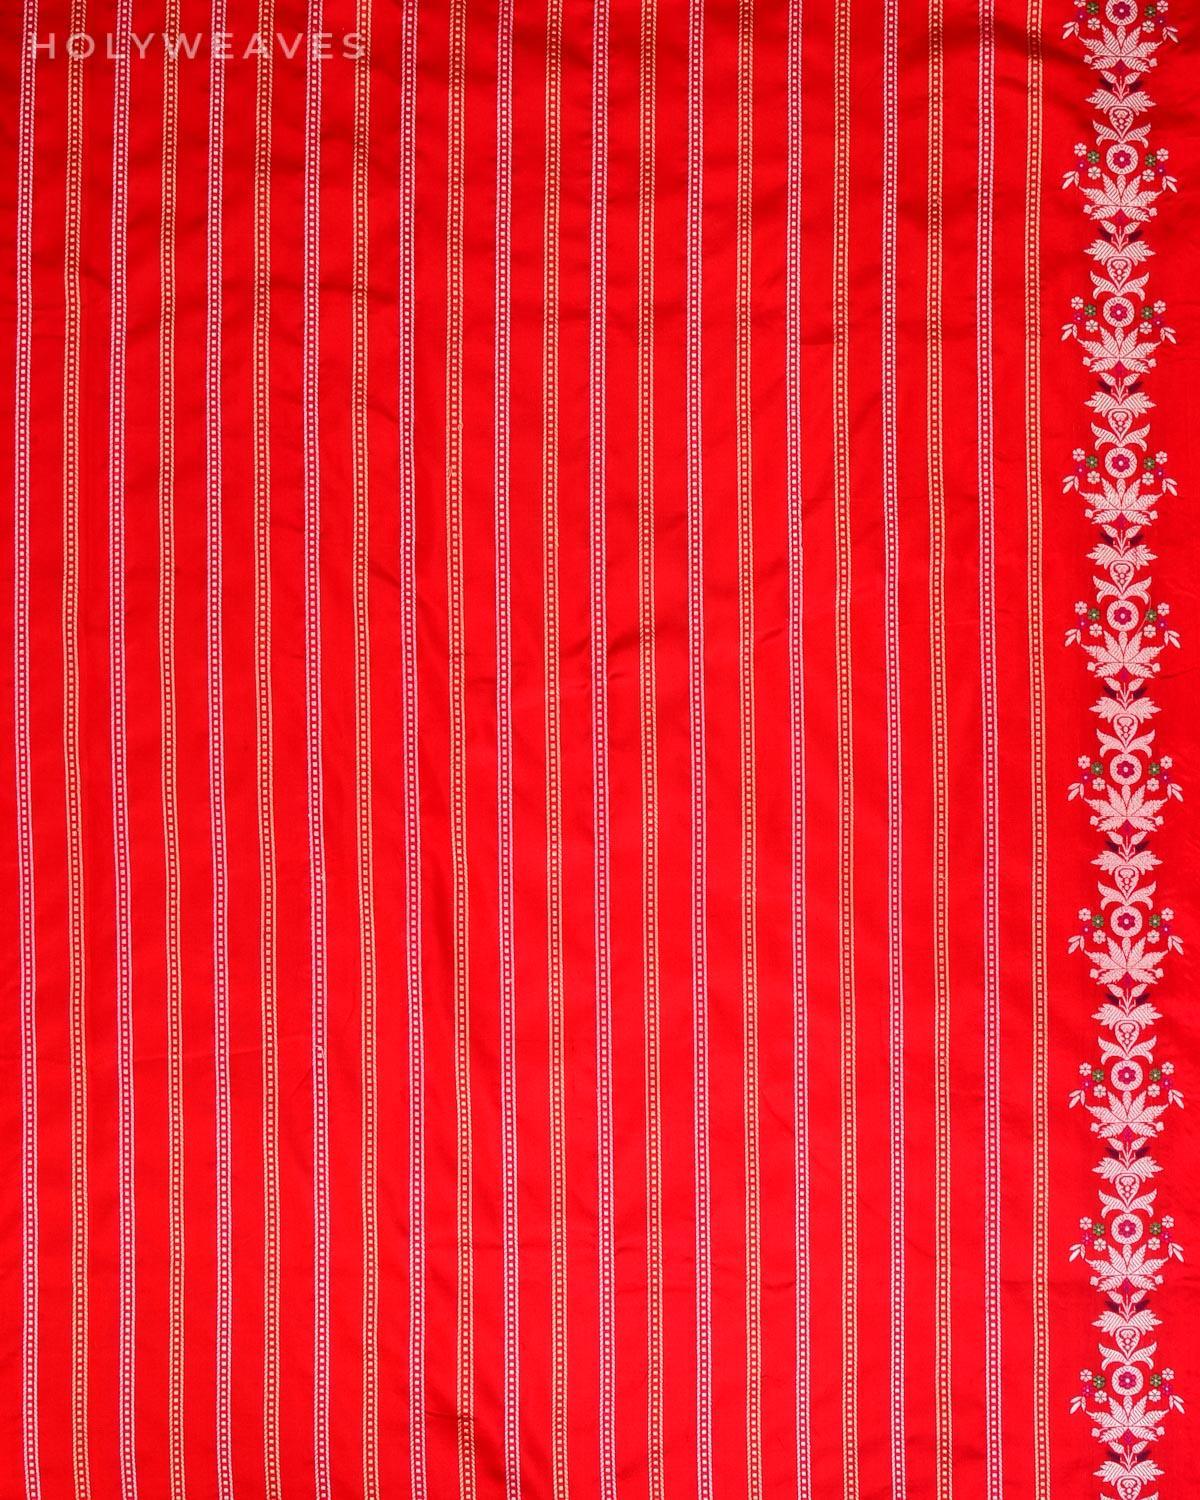 Gray Banarasi Silver Zari Meena Bel Kadhuan Brocade Handwoven Katan Silk Saree with Red Blouse Piece - By HolyWeaves, Benares